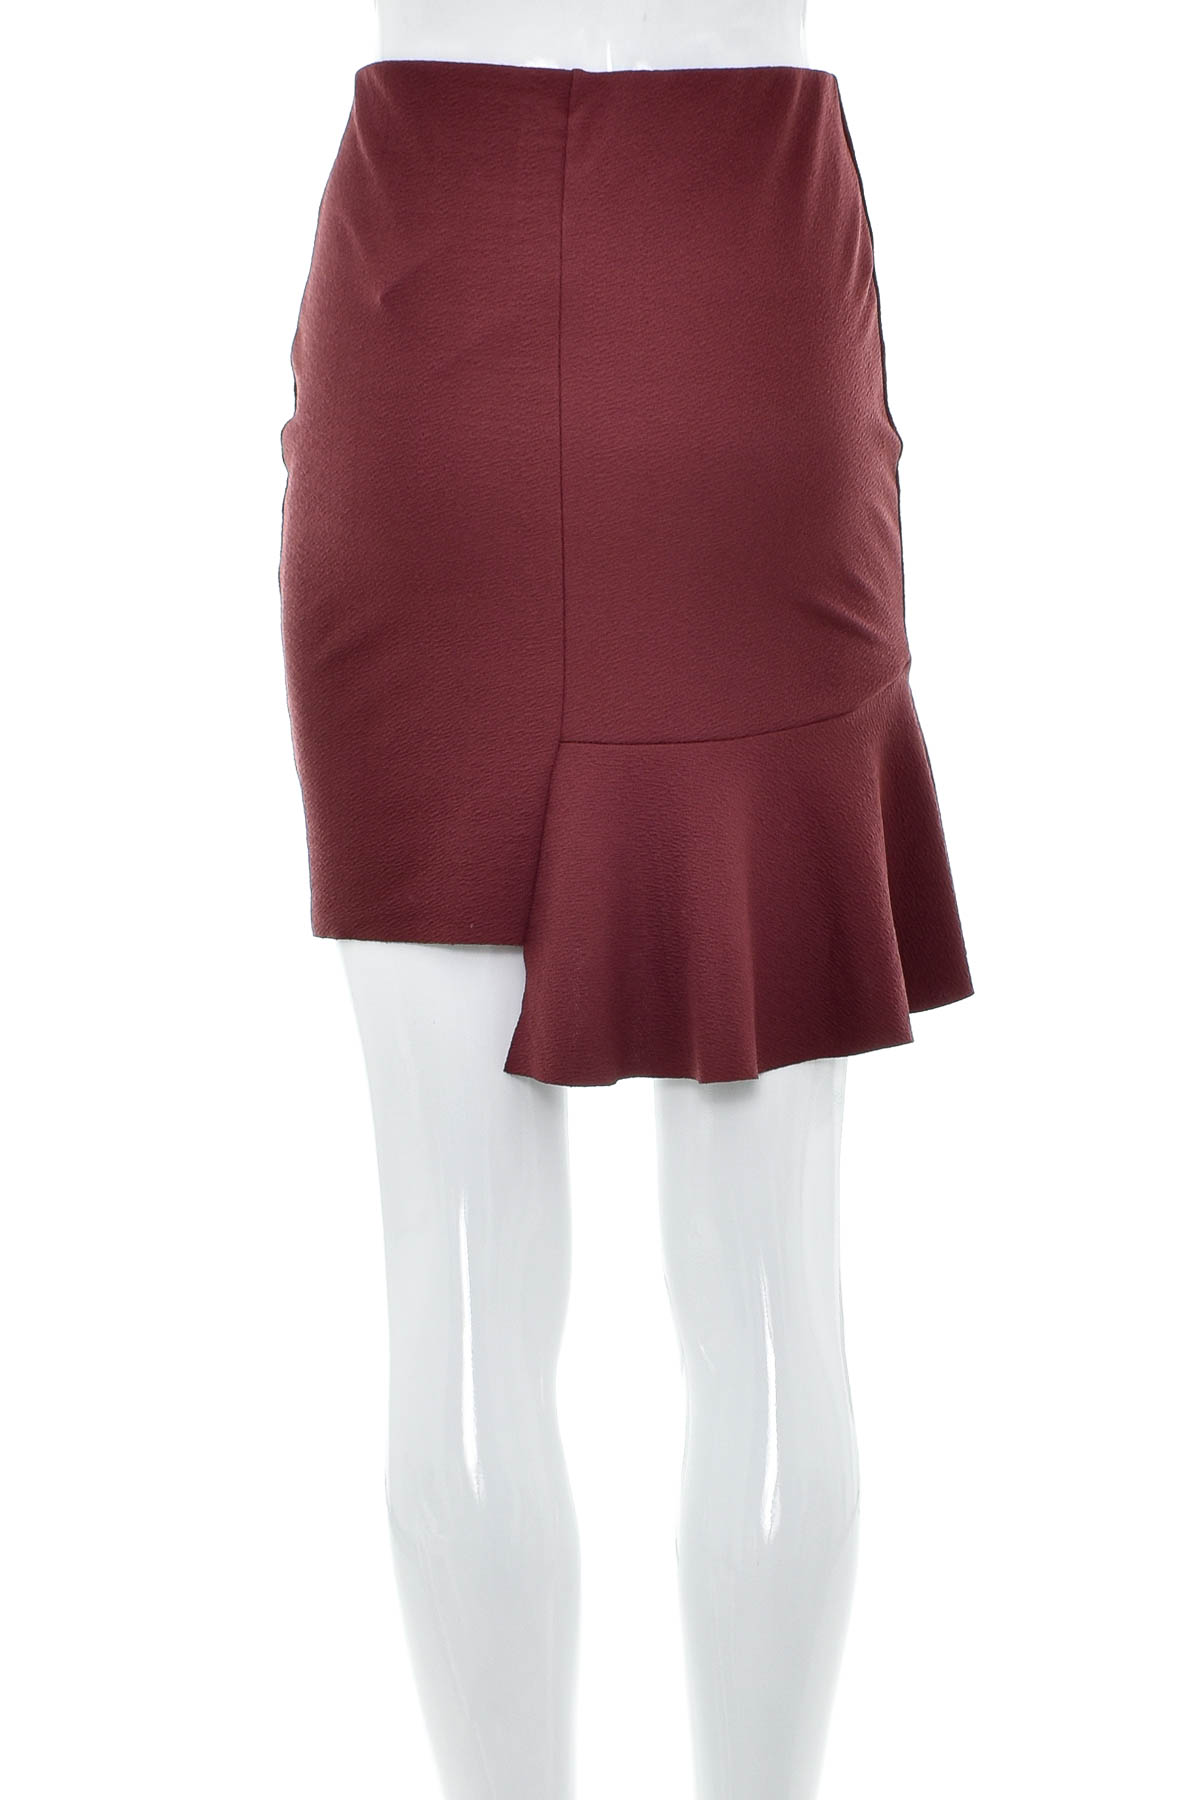 Skirt - Gina Tricot - 1